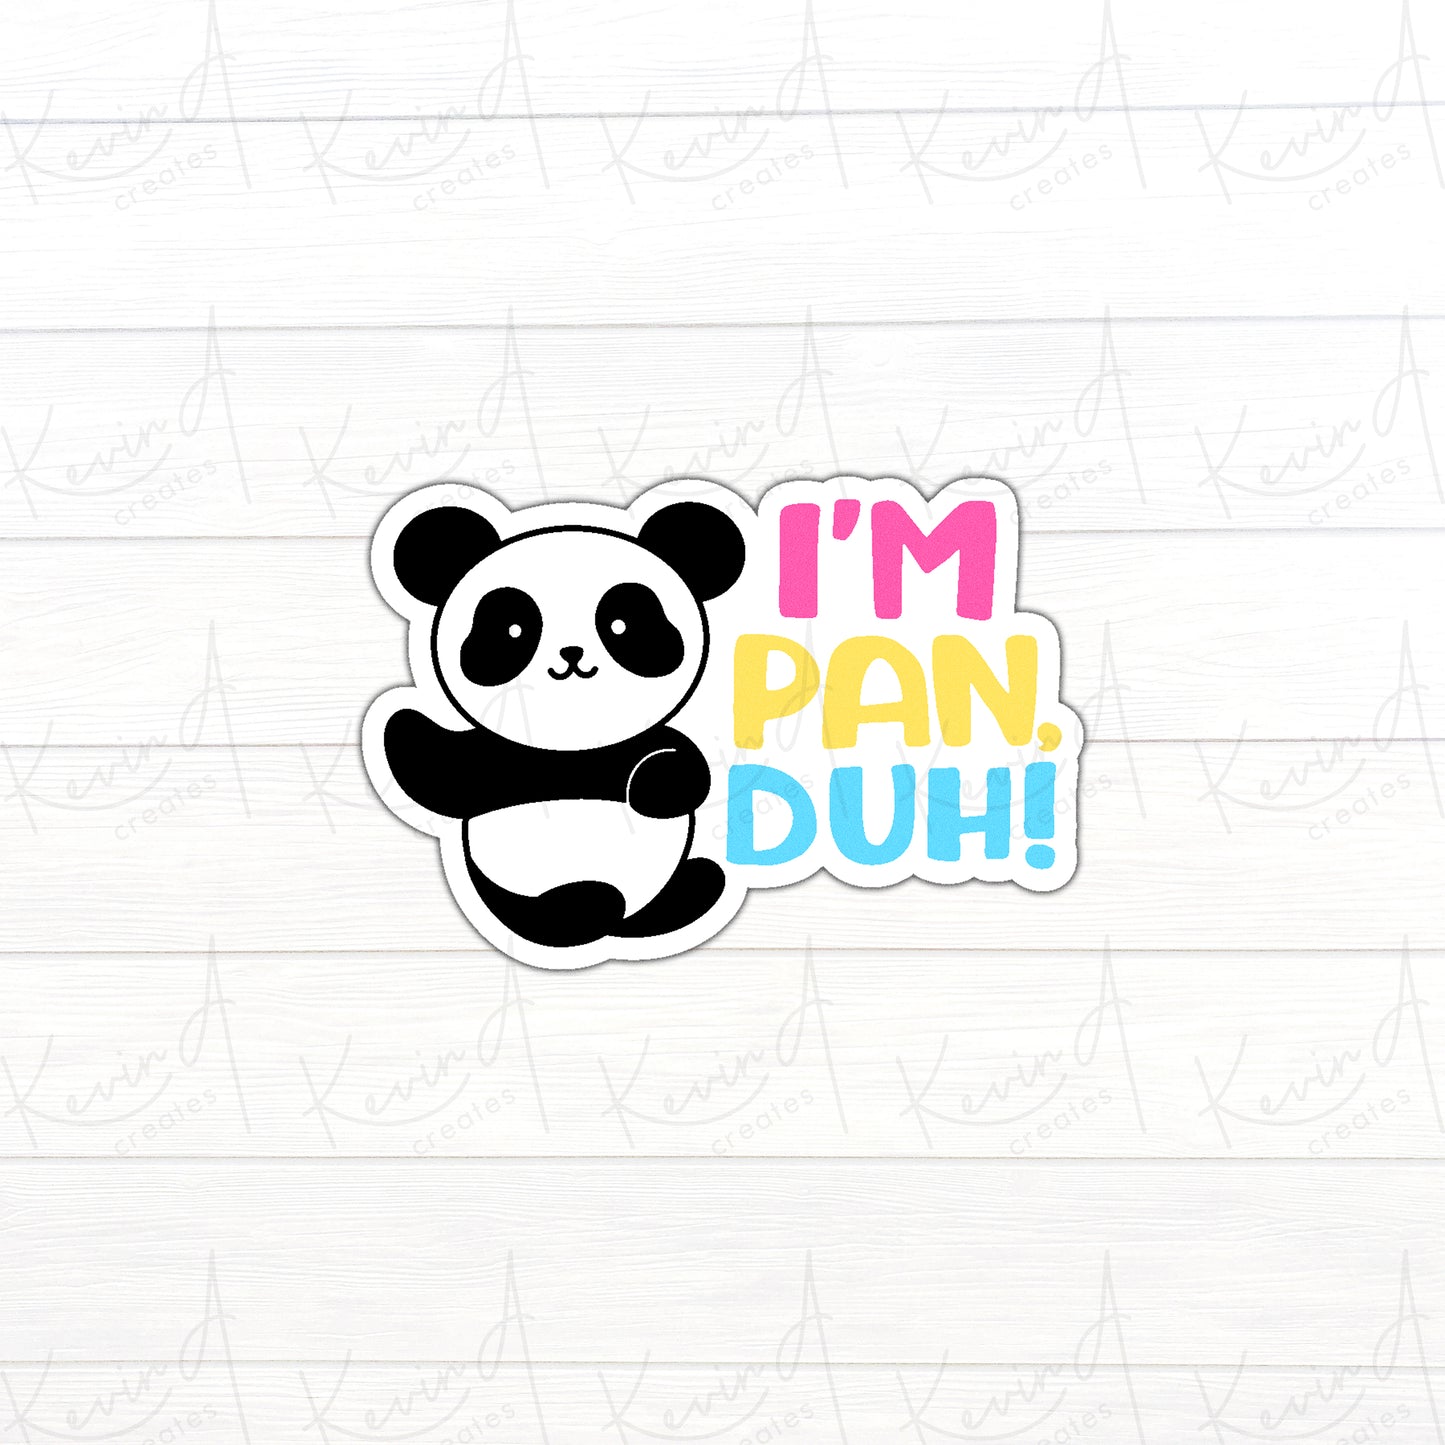 DC-030, "I'm Pan Duh" Pansexual Pride Die Cut Stickers